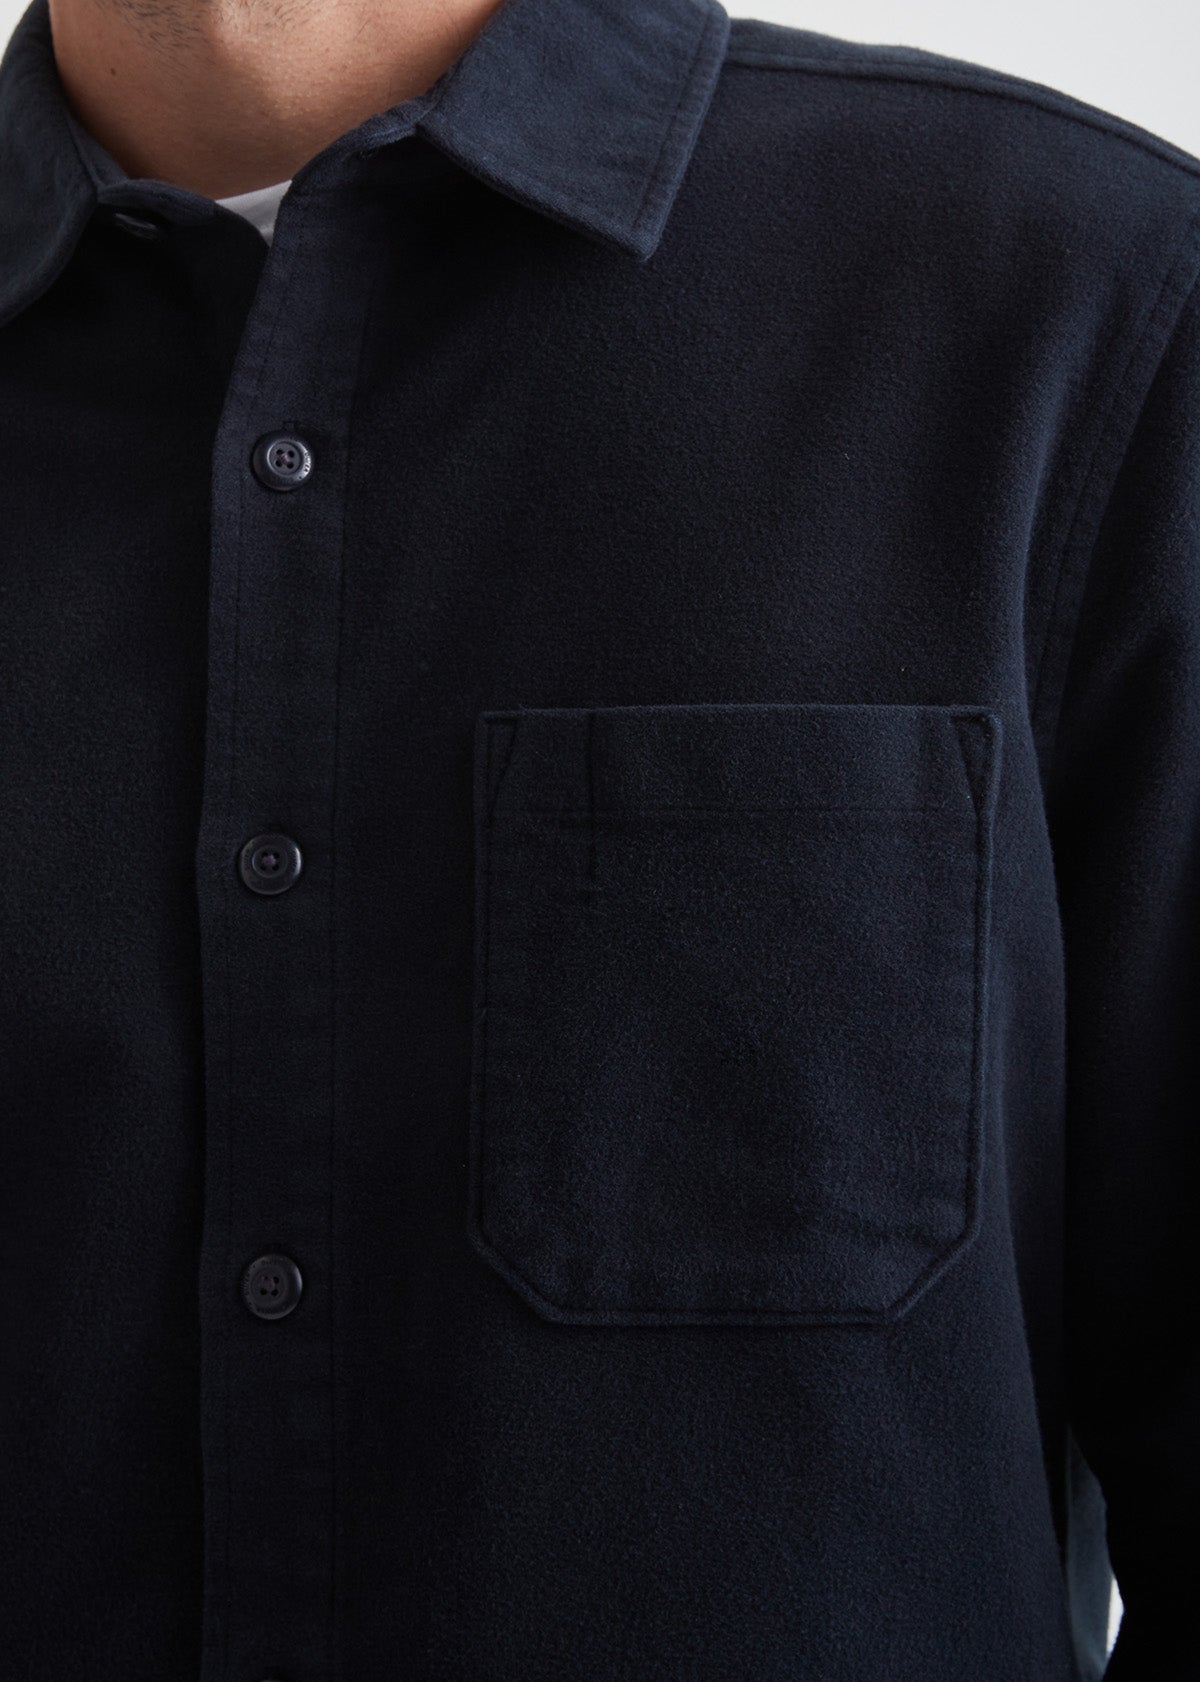 Men's Navy Relaxed Moleskin Button Up Shirt Chest Pocket Detail